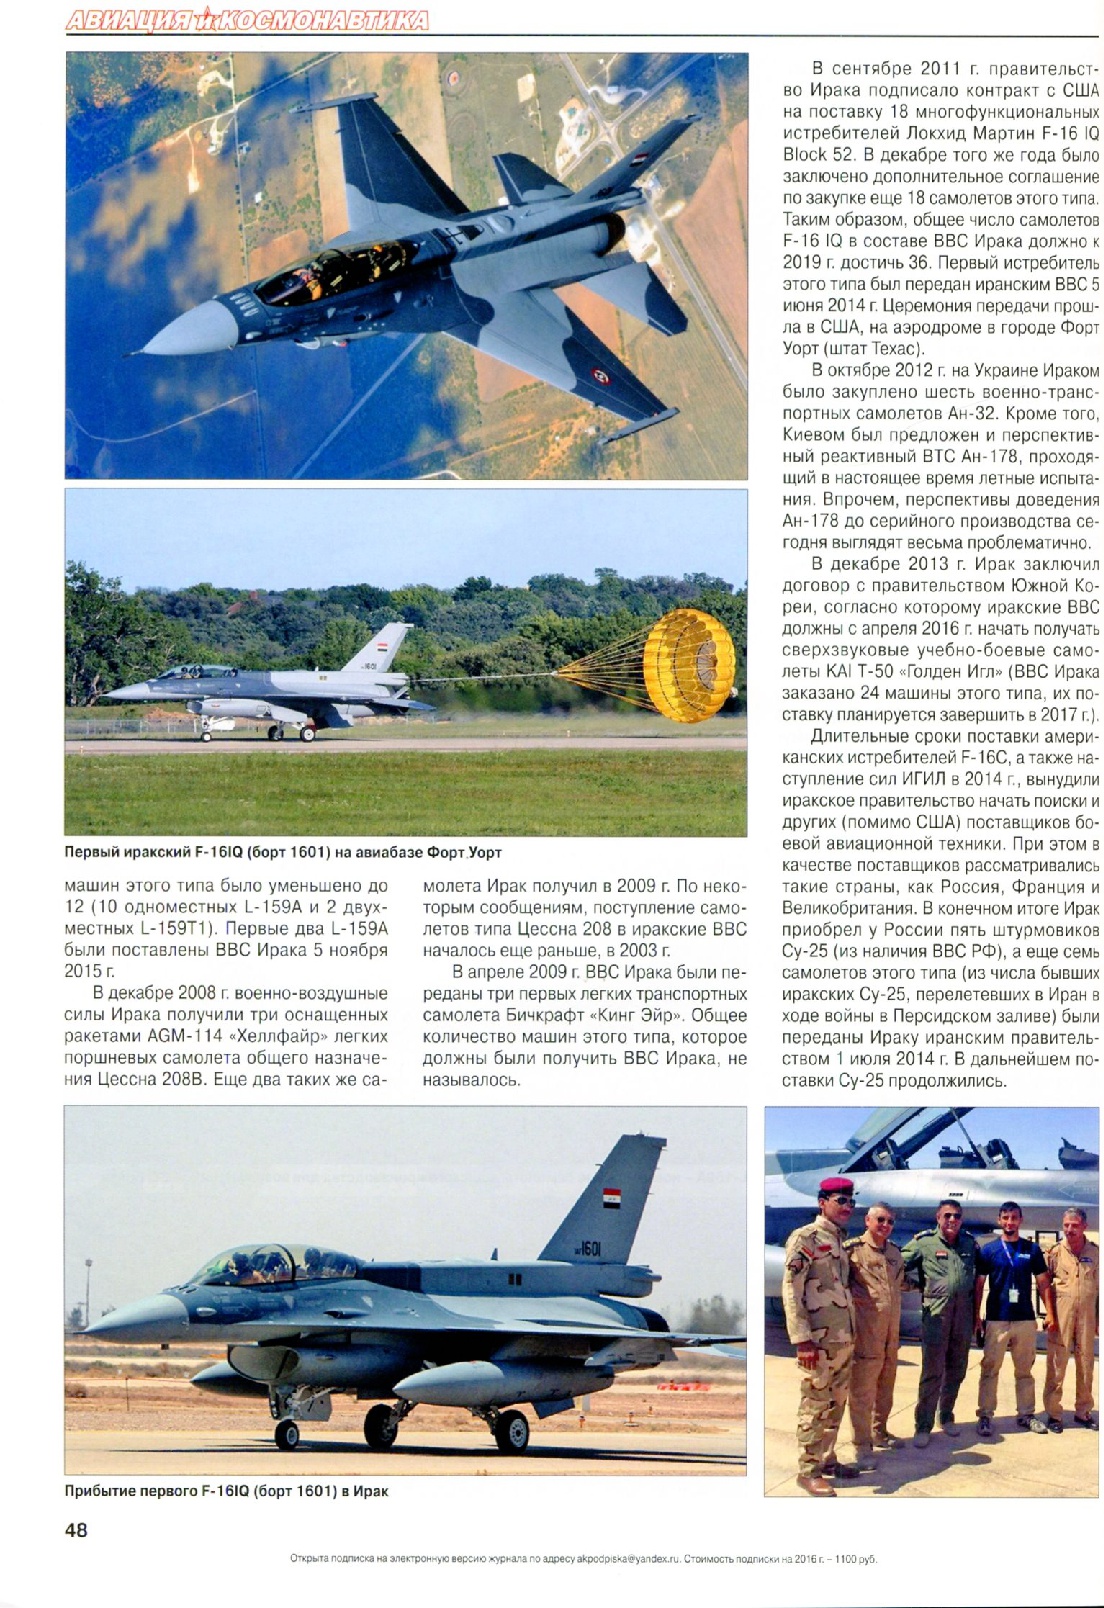 وصول طائرات روسية مقاتلة جديدة خلال اسابيع - صفحة 2 27304678336_fd79216d3e_o